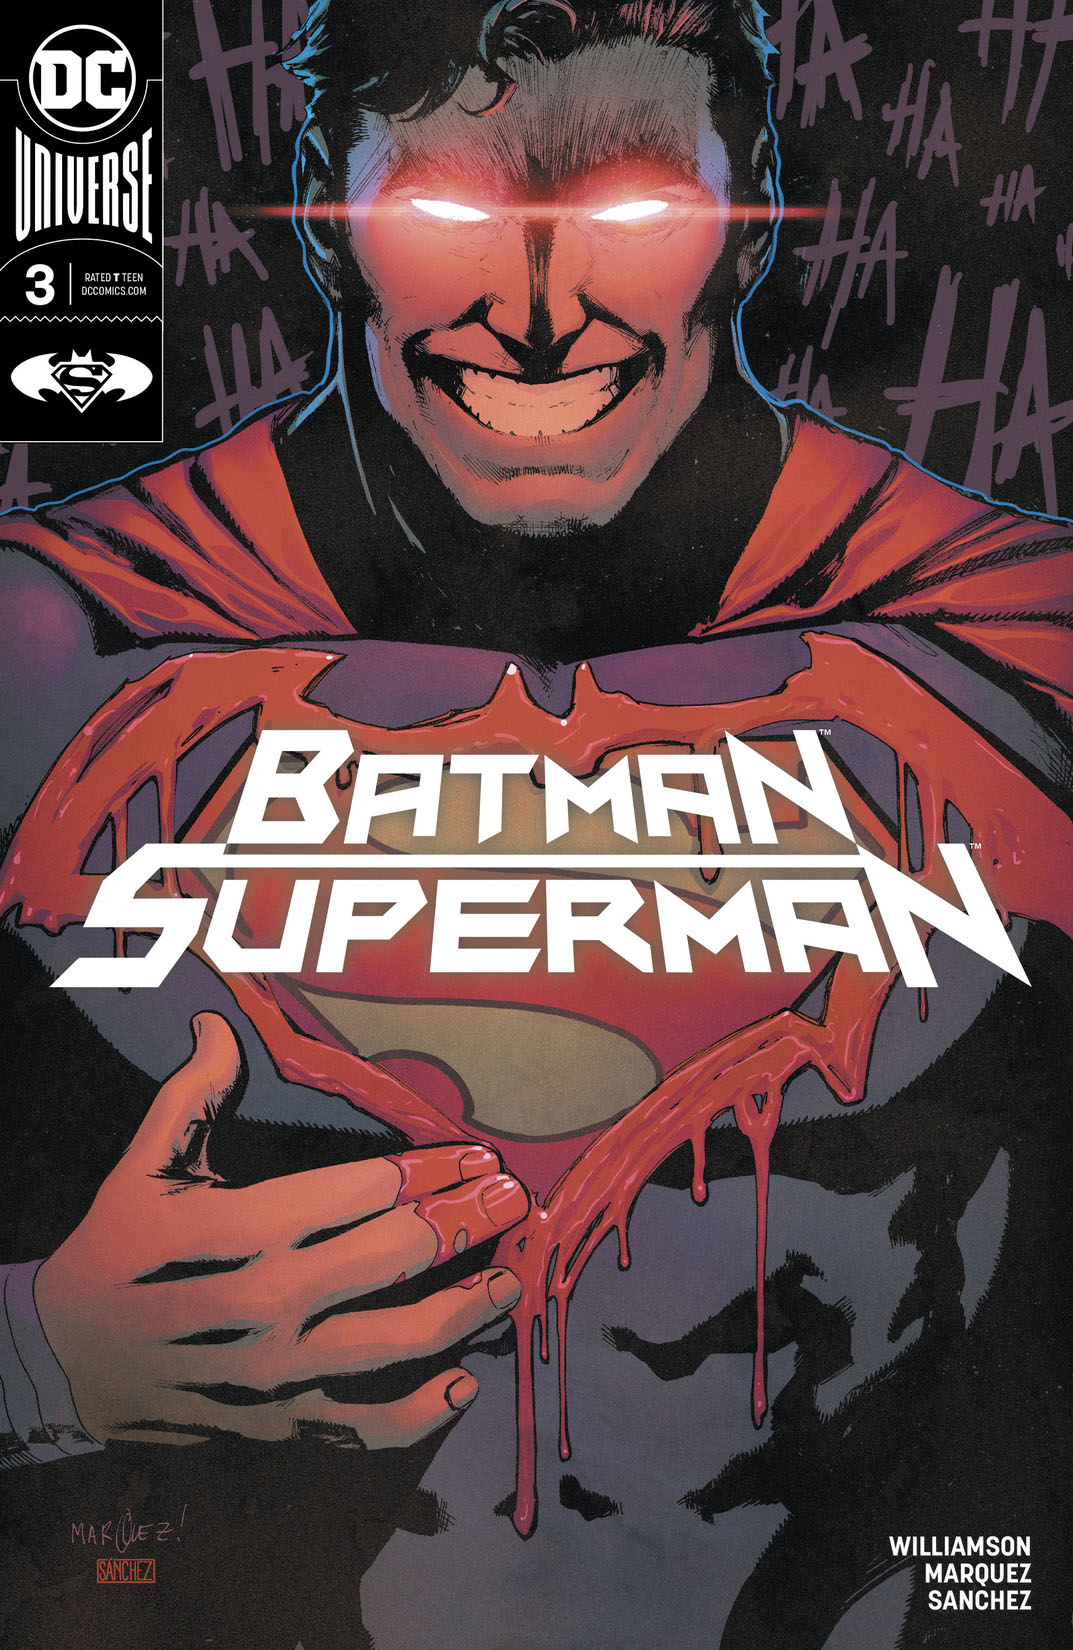 Batman/Superman (2019-) #3 preview images